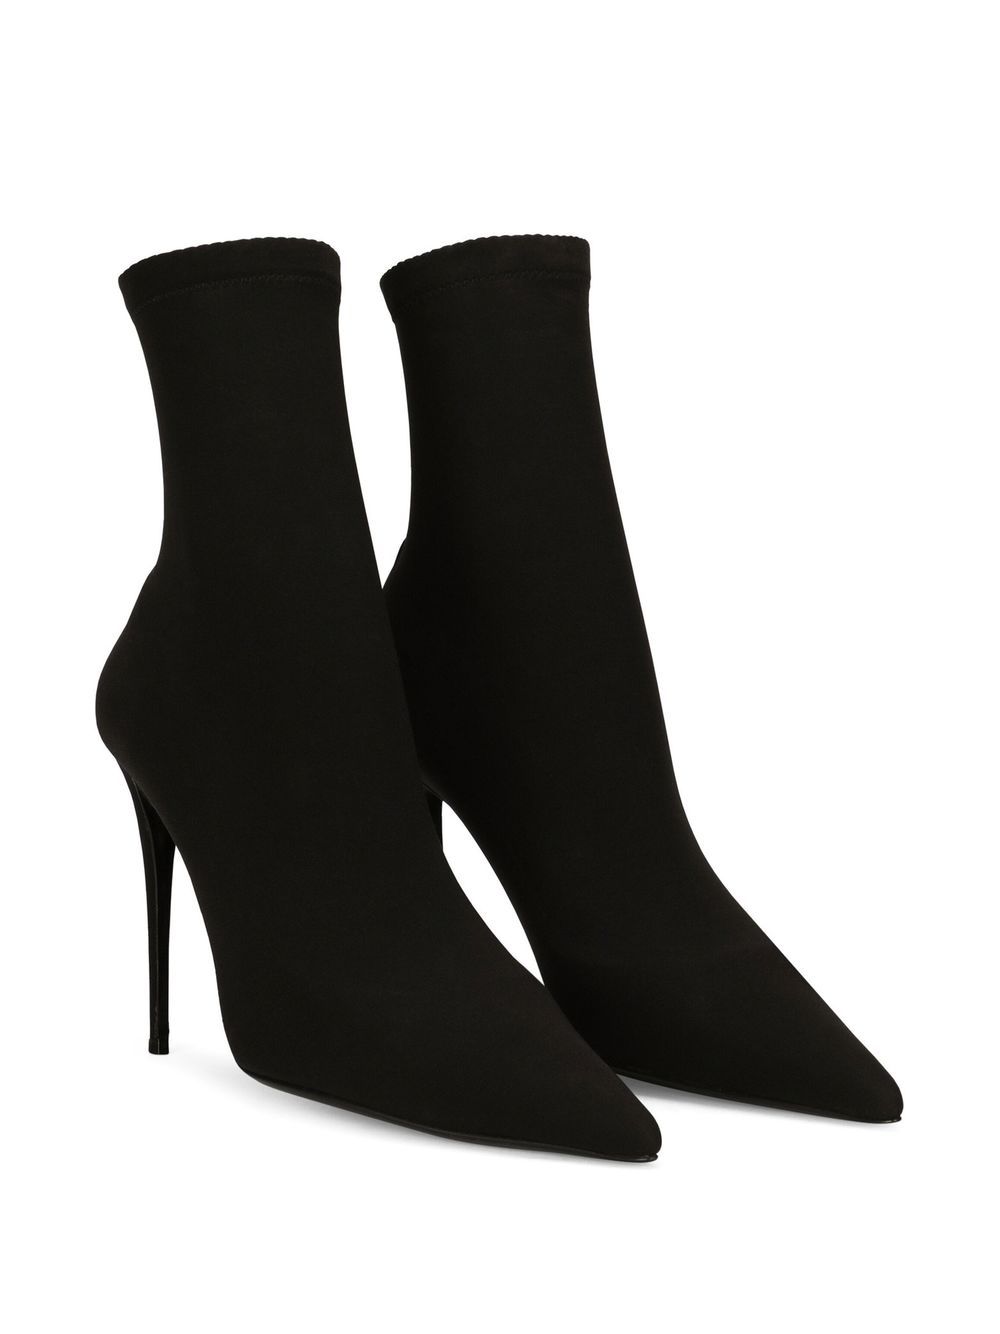 Dolce & Gabbana KIM DOLCE&GABBANA Sock Ankle Boots - Farfetch